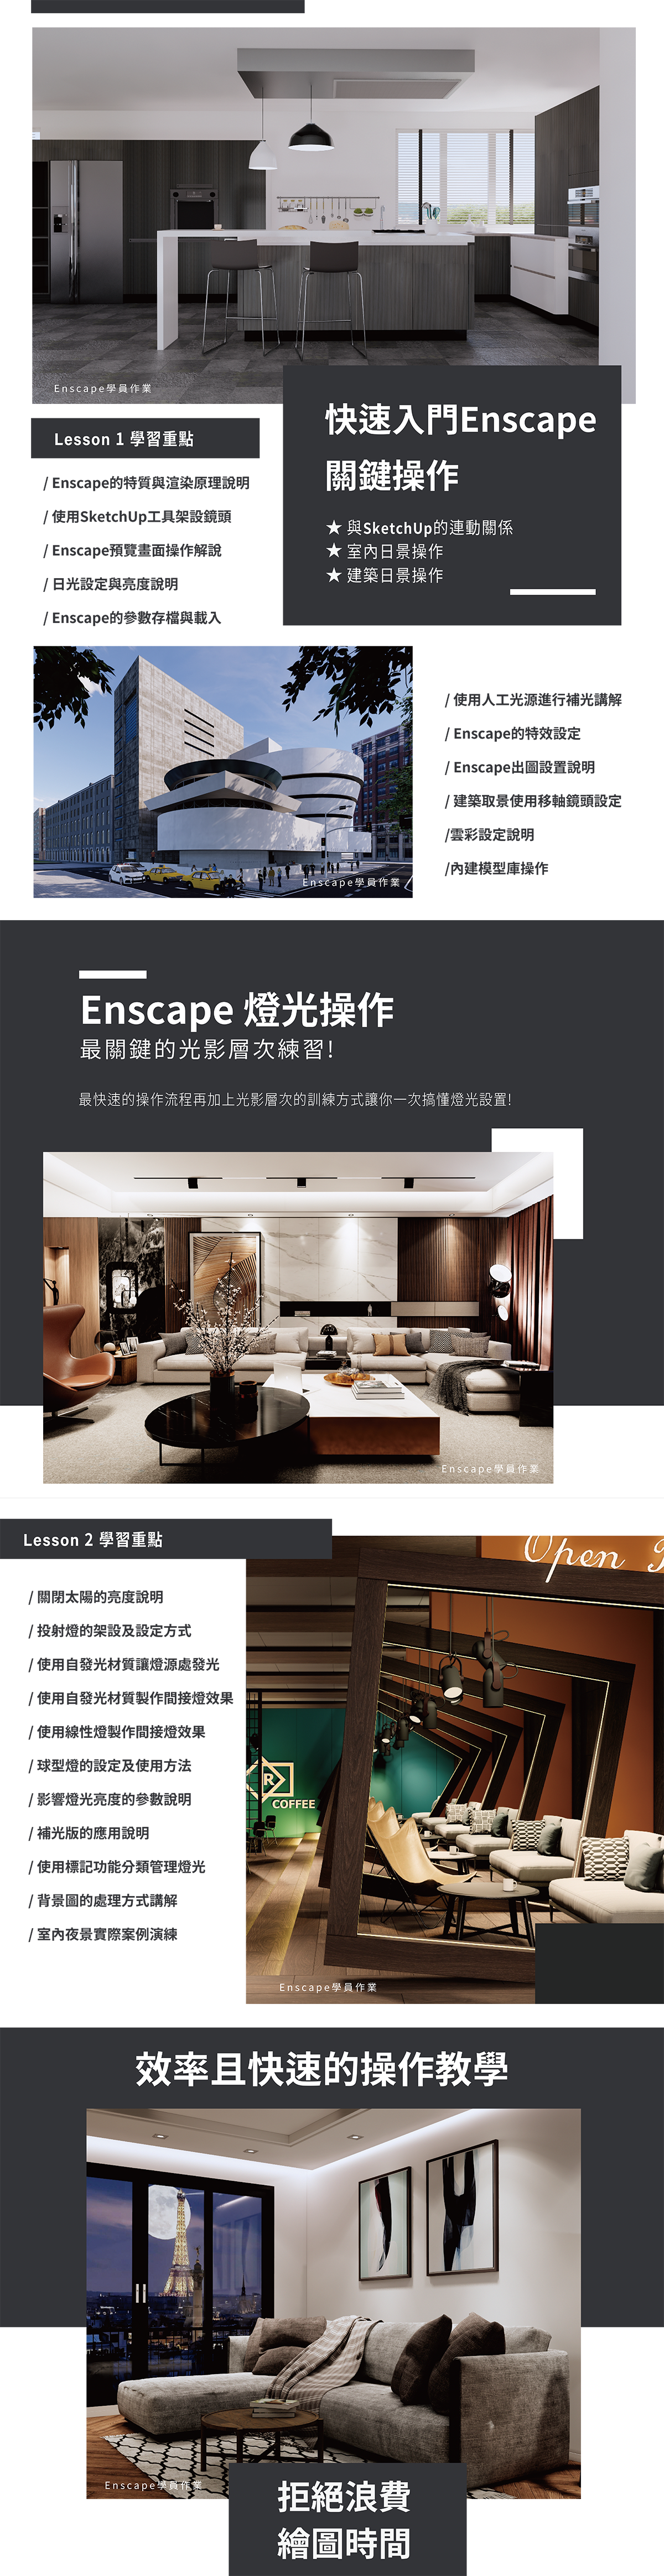 Enscape3.1 中文 課程